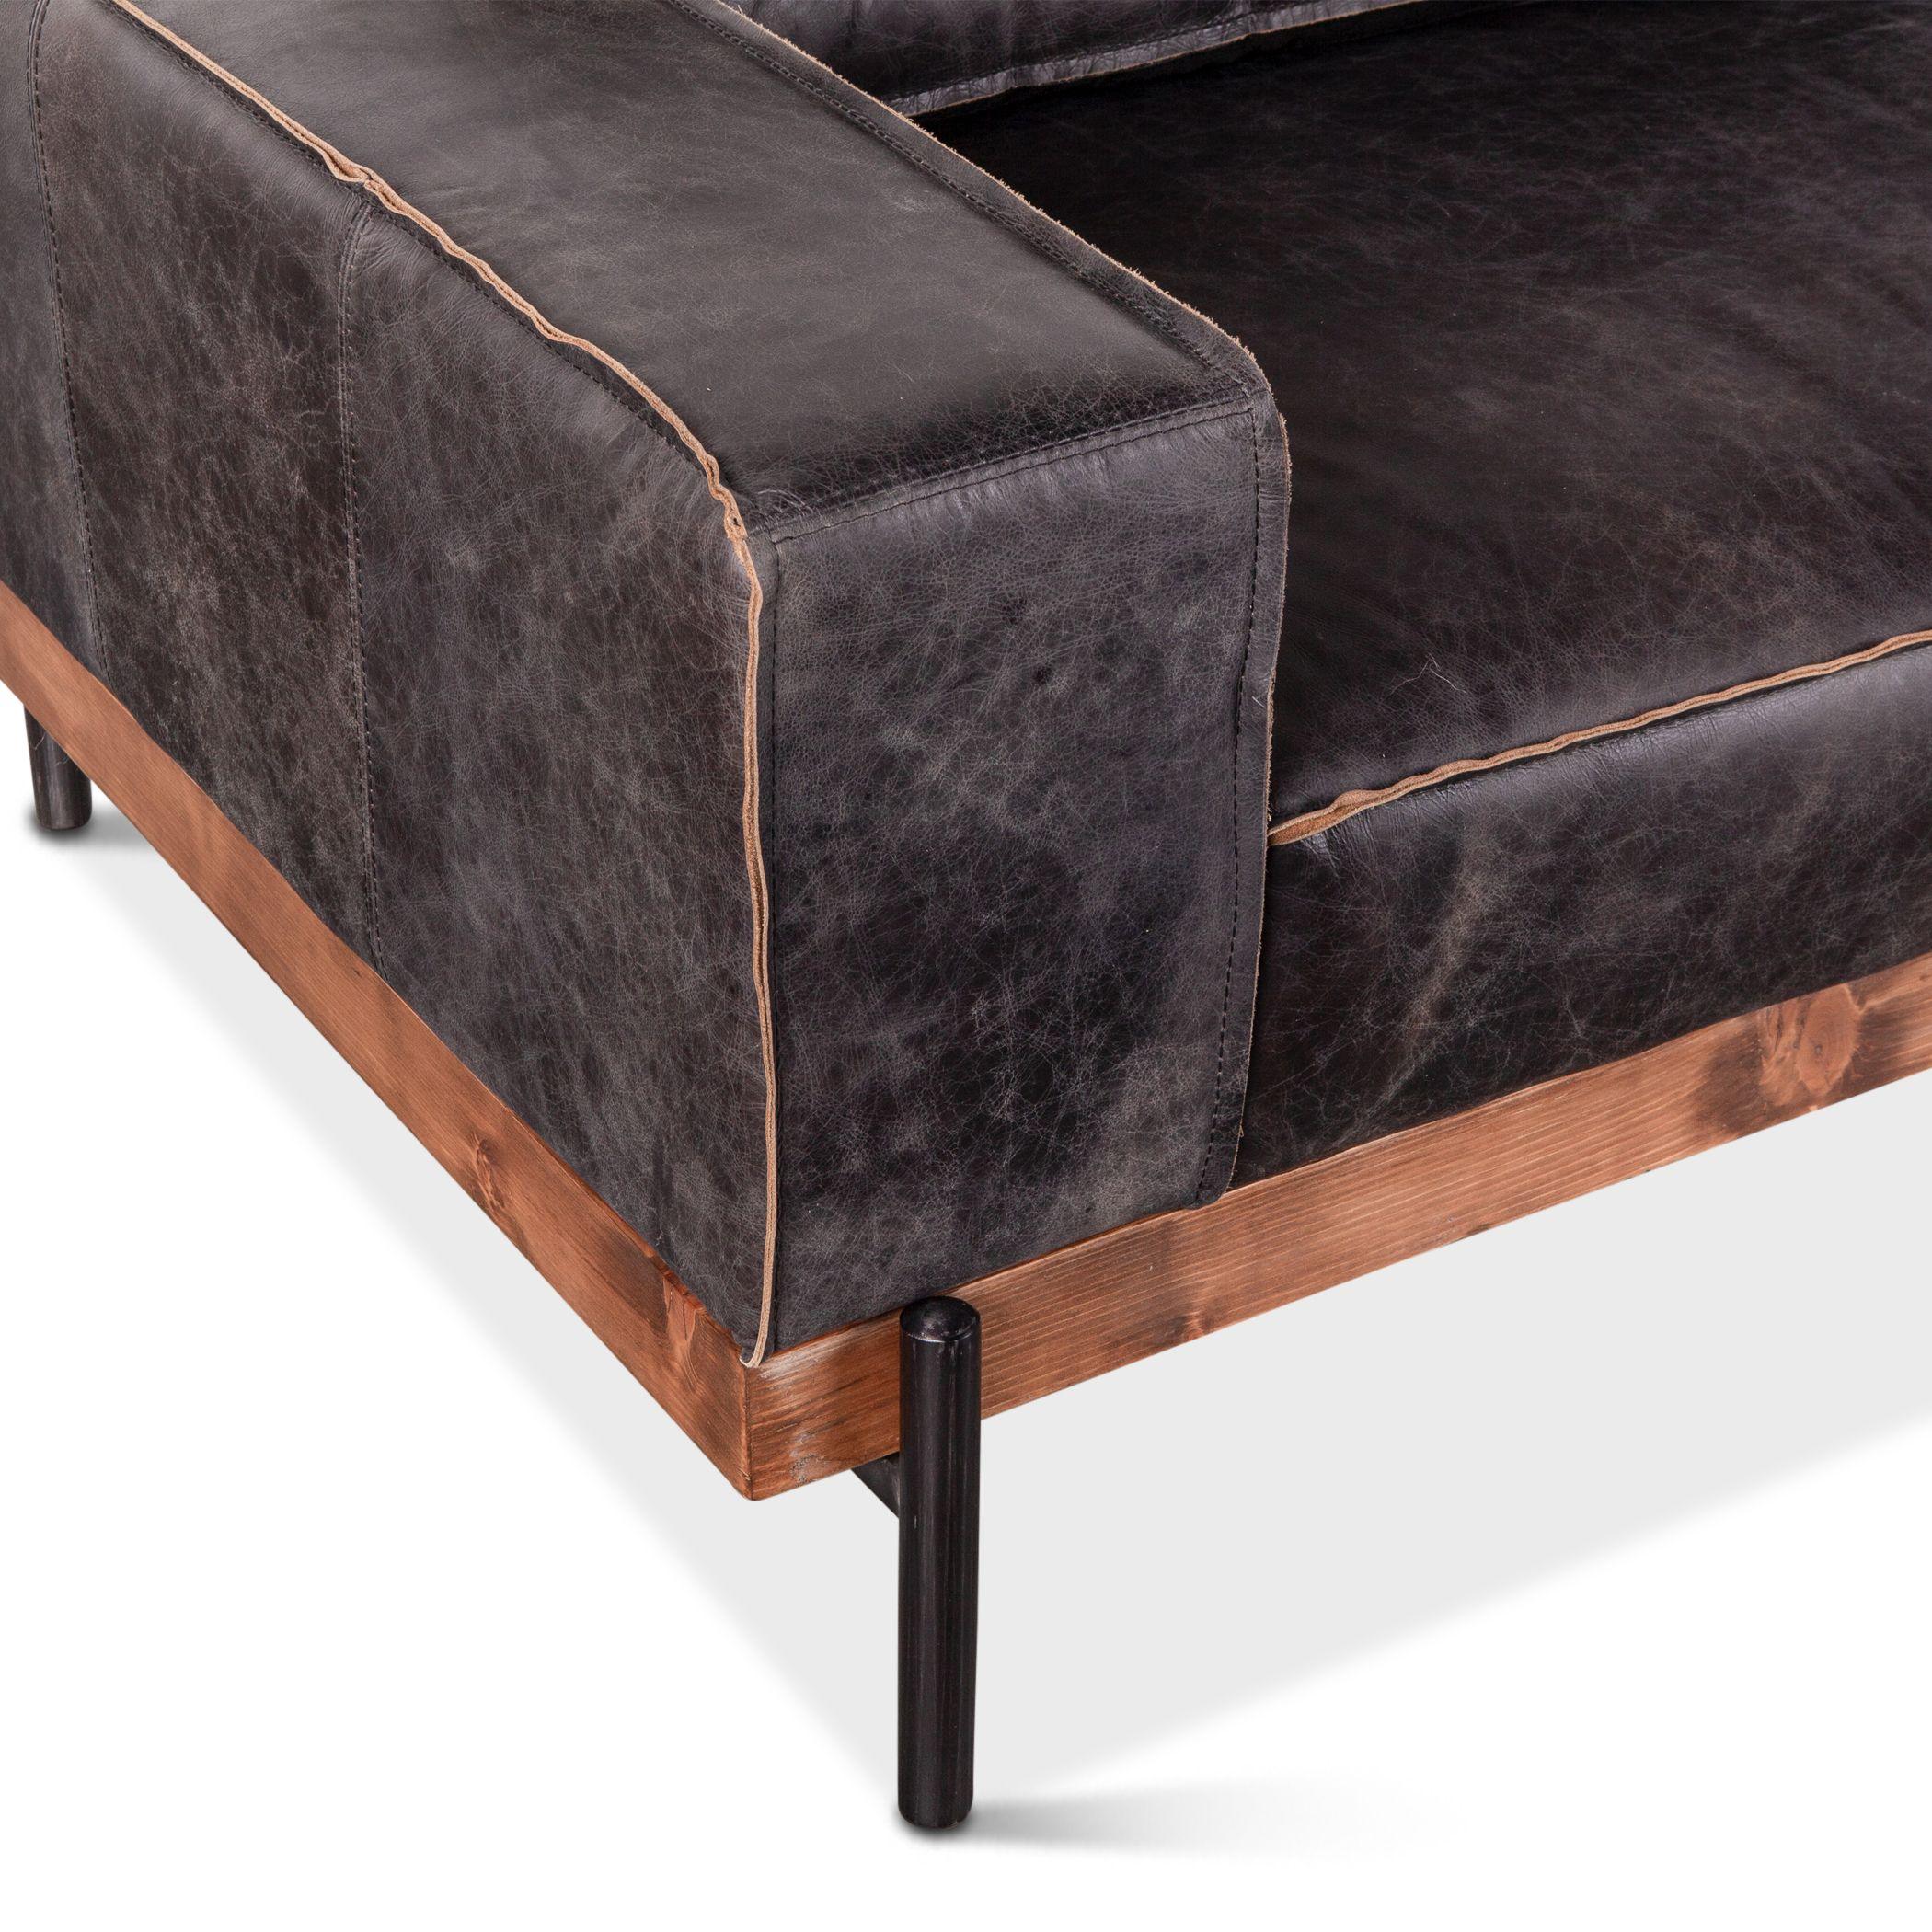 Portofino Industrial Black Leather Sofa - Belle Escape